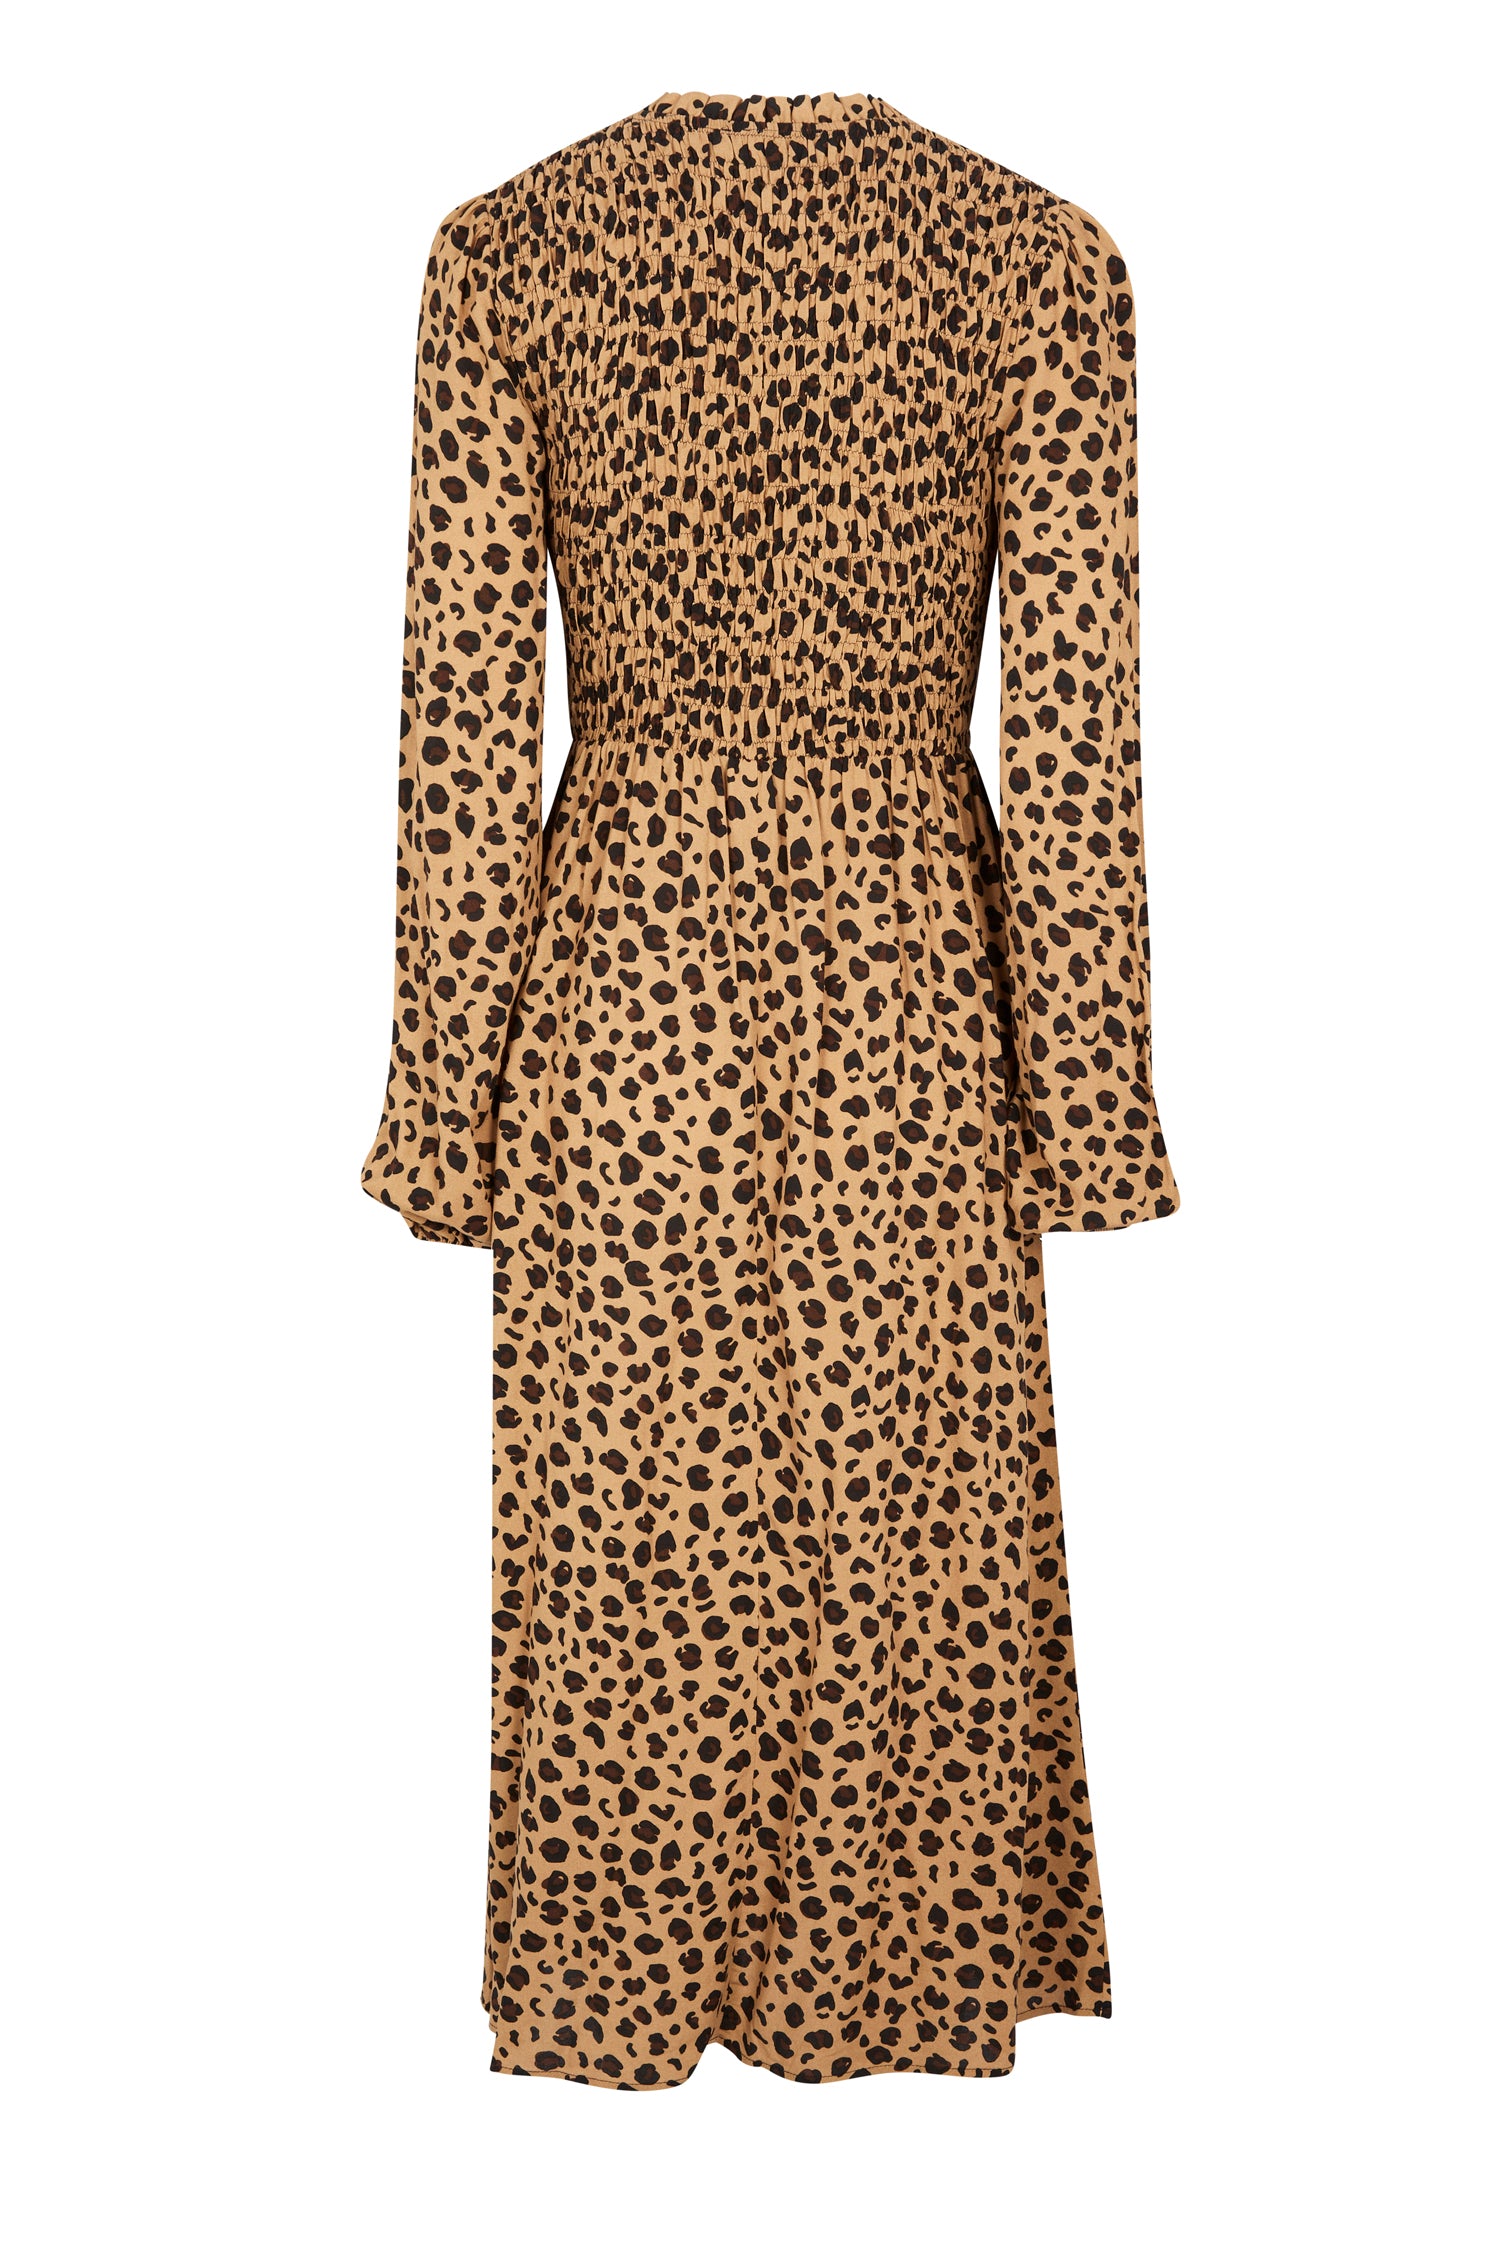 Back of Leopard Swedish Dress